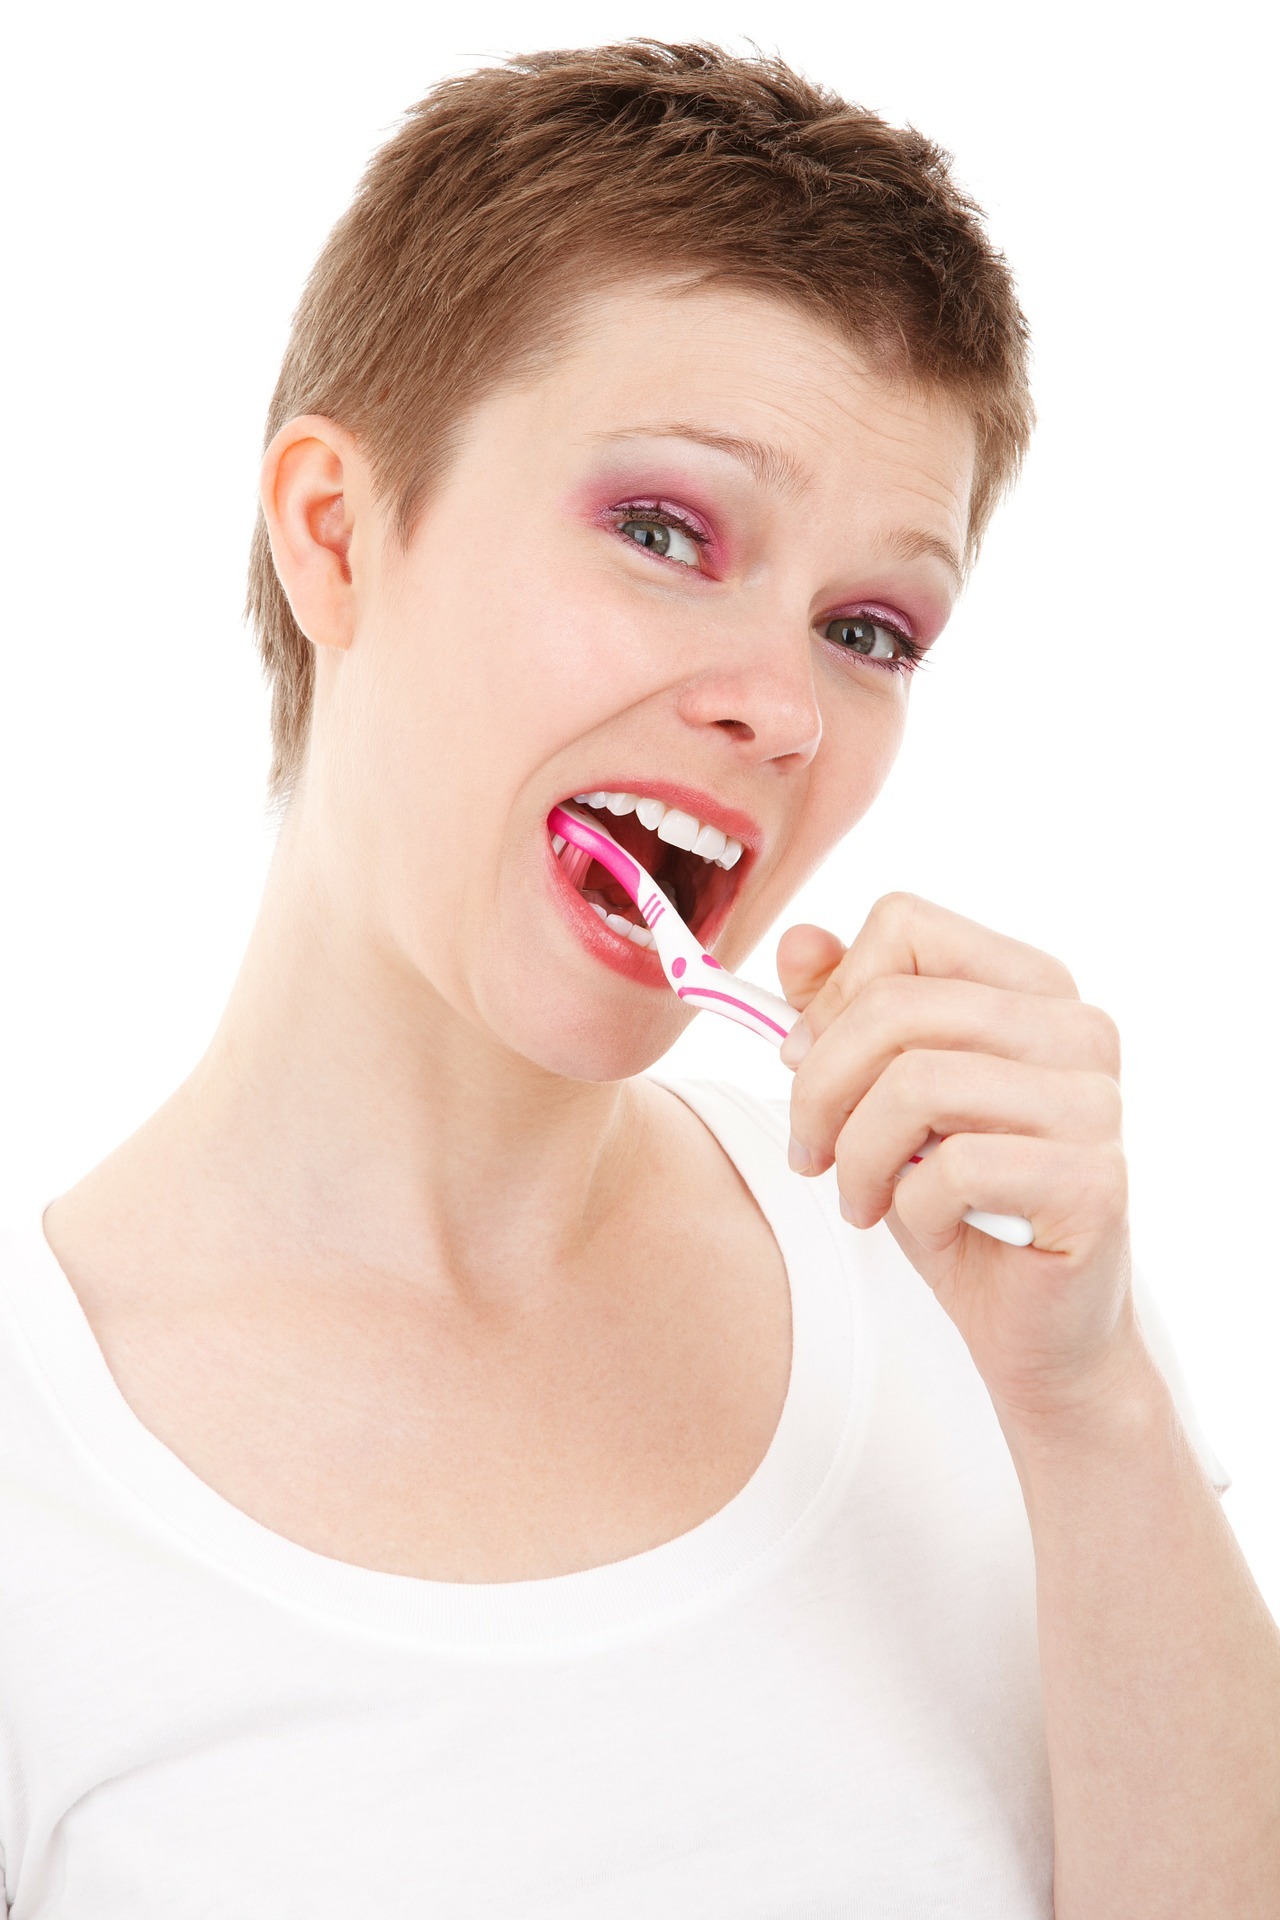 Hamilelikte Diş Sağlığı Gebelikte Diş Sağlığı Hamilelikte diş eti hastalığı